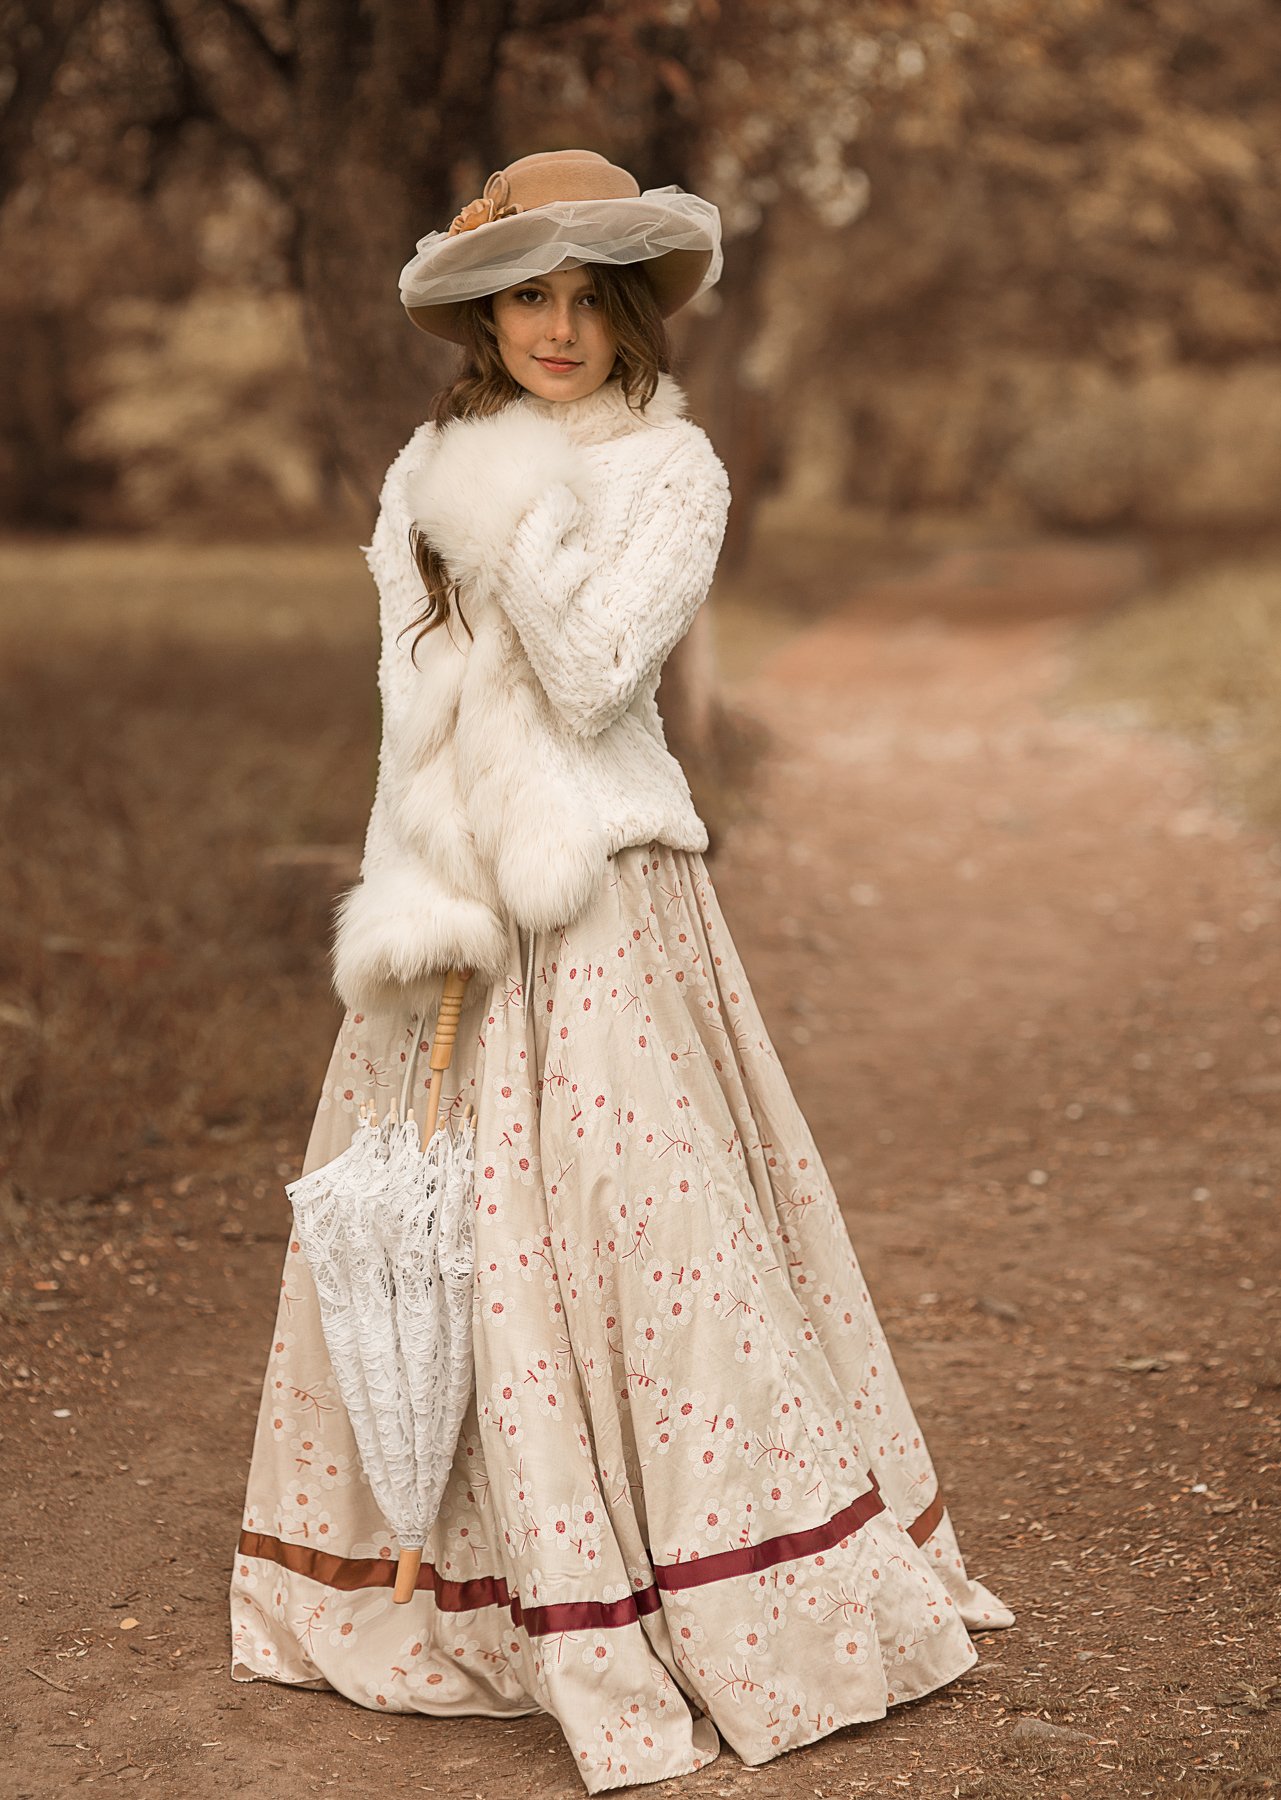 девушка, красивая, 19 век, история, историческая реконструкция, платье, образ, Дарья Комарова